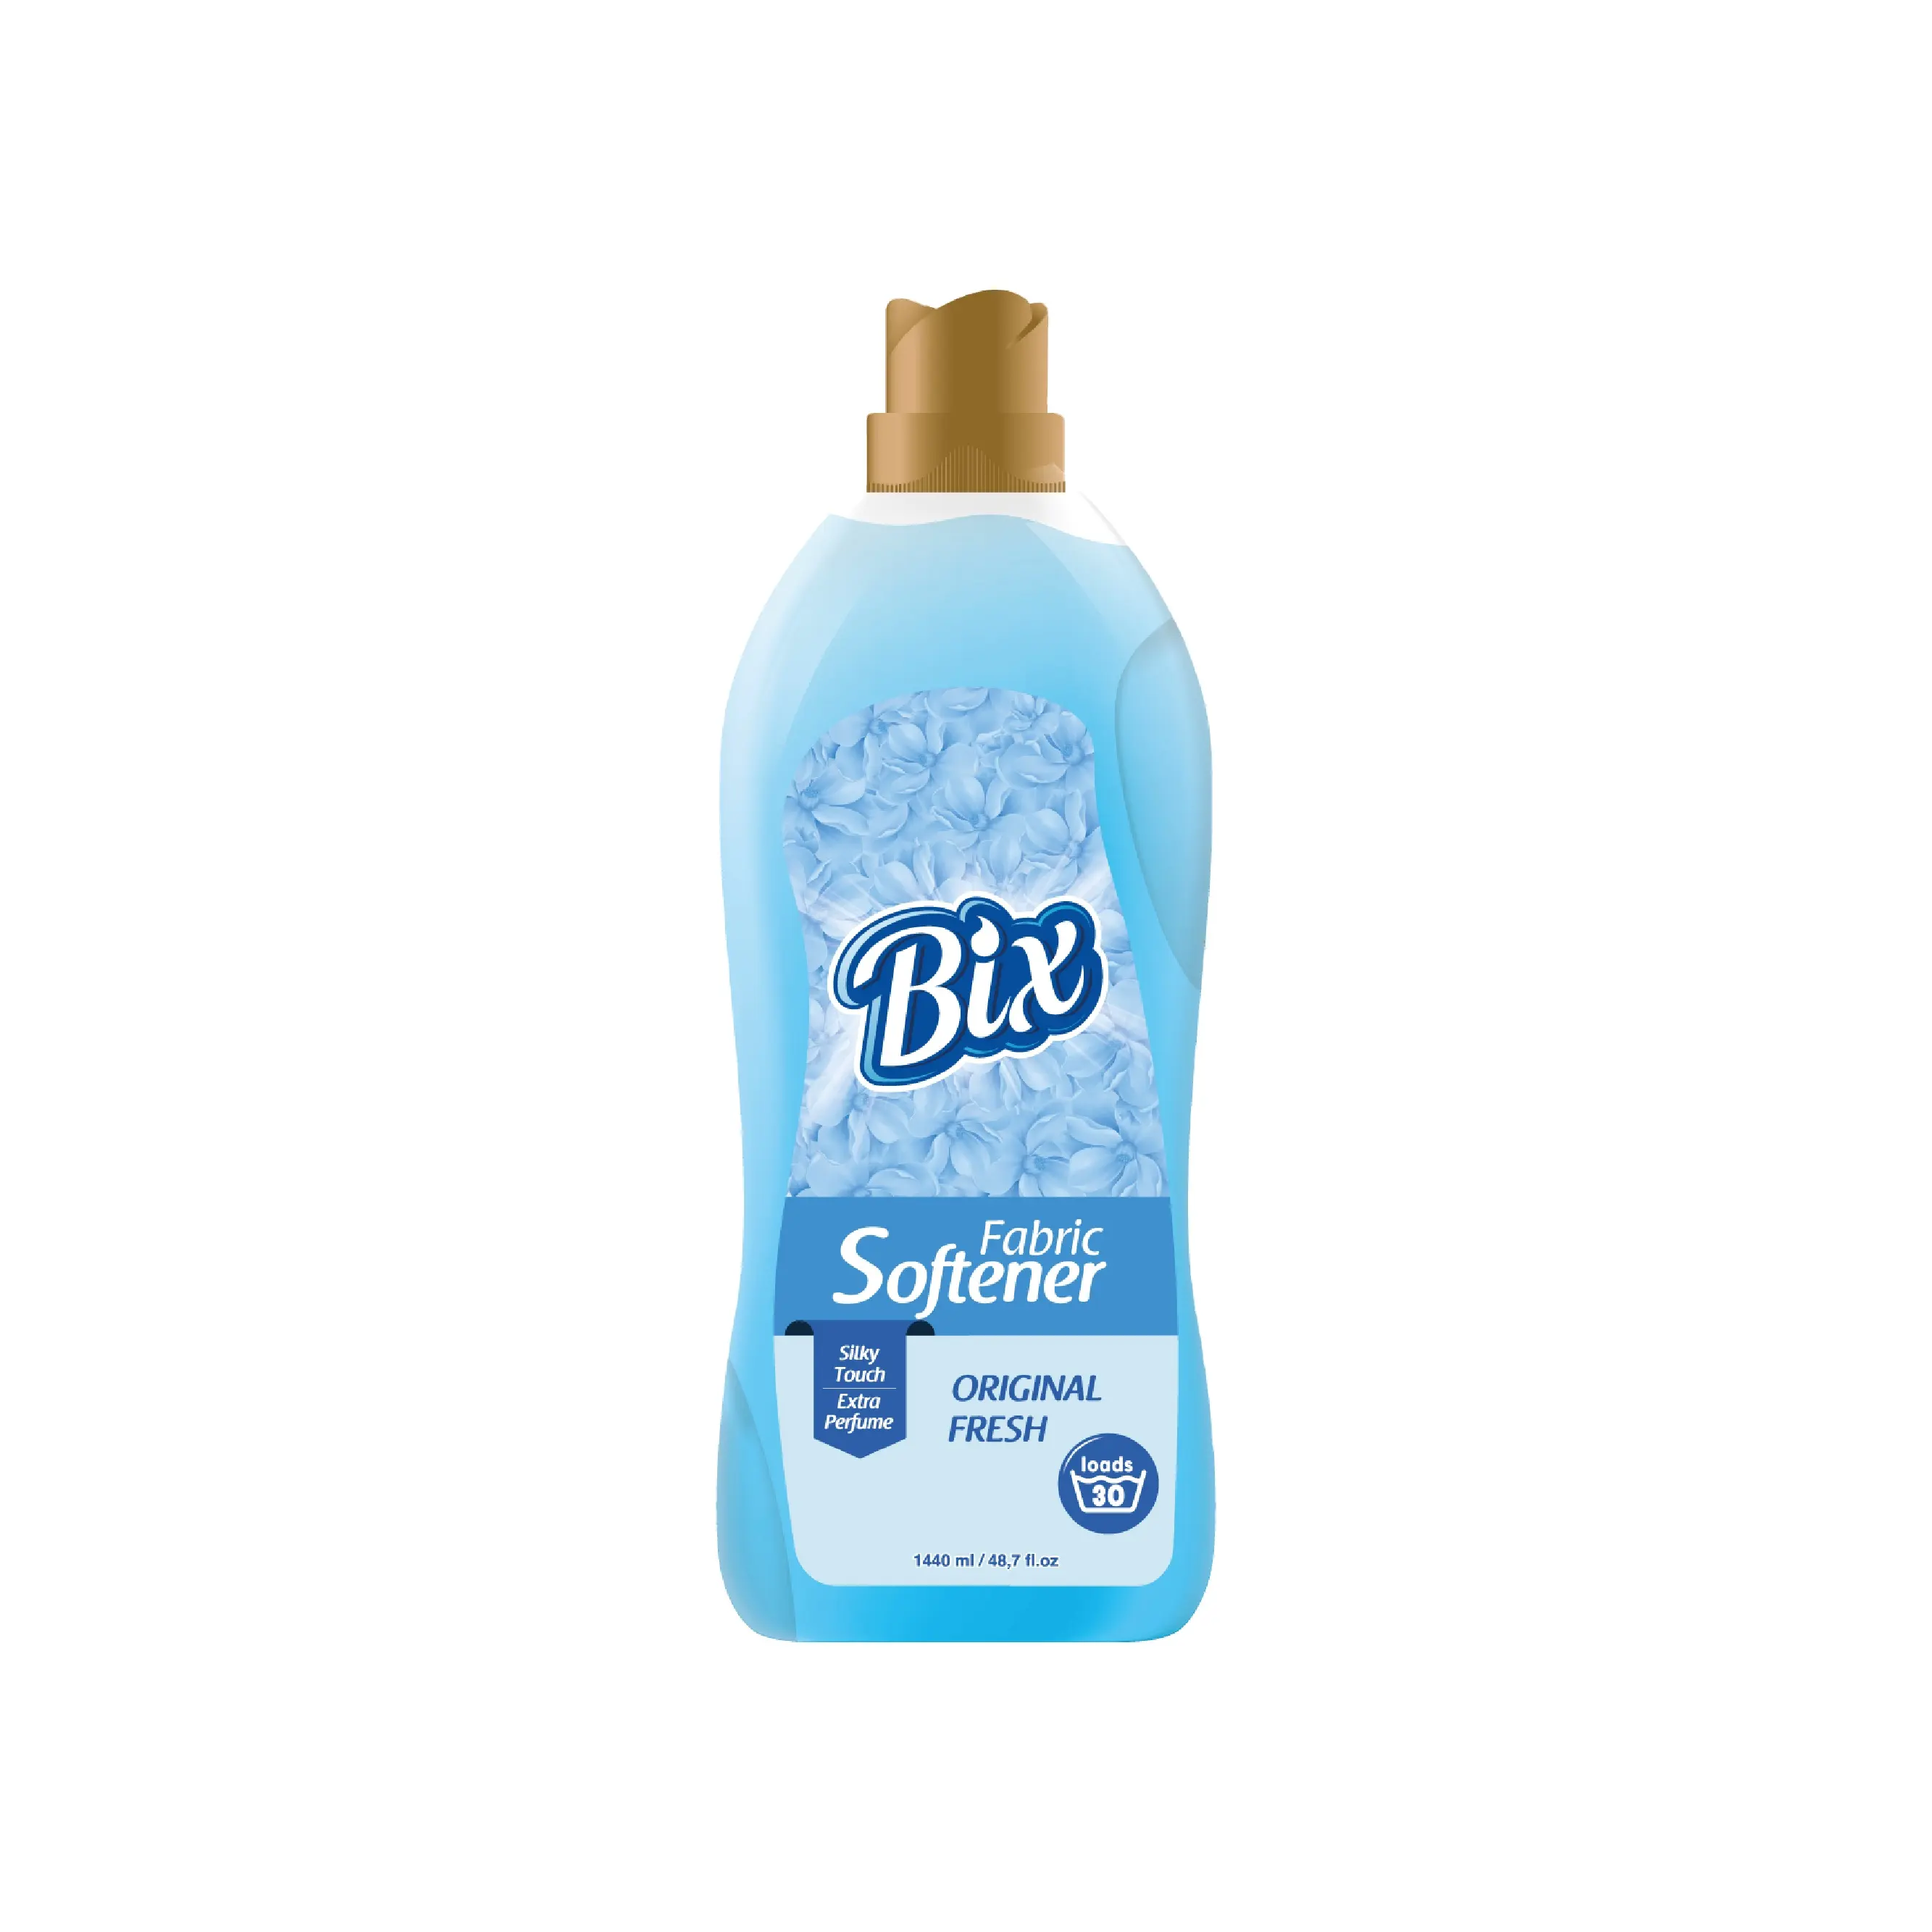 Tissu Bix 1440 ml 48,7 fl.oz produit Premium toucher soyeux parfum supplémentaire adoucisseur frais Original